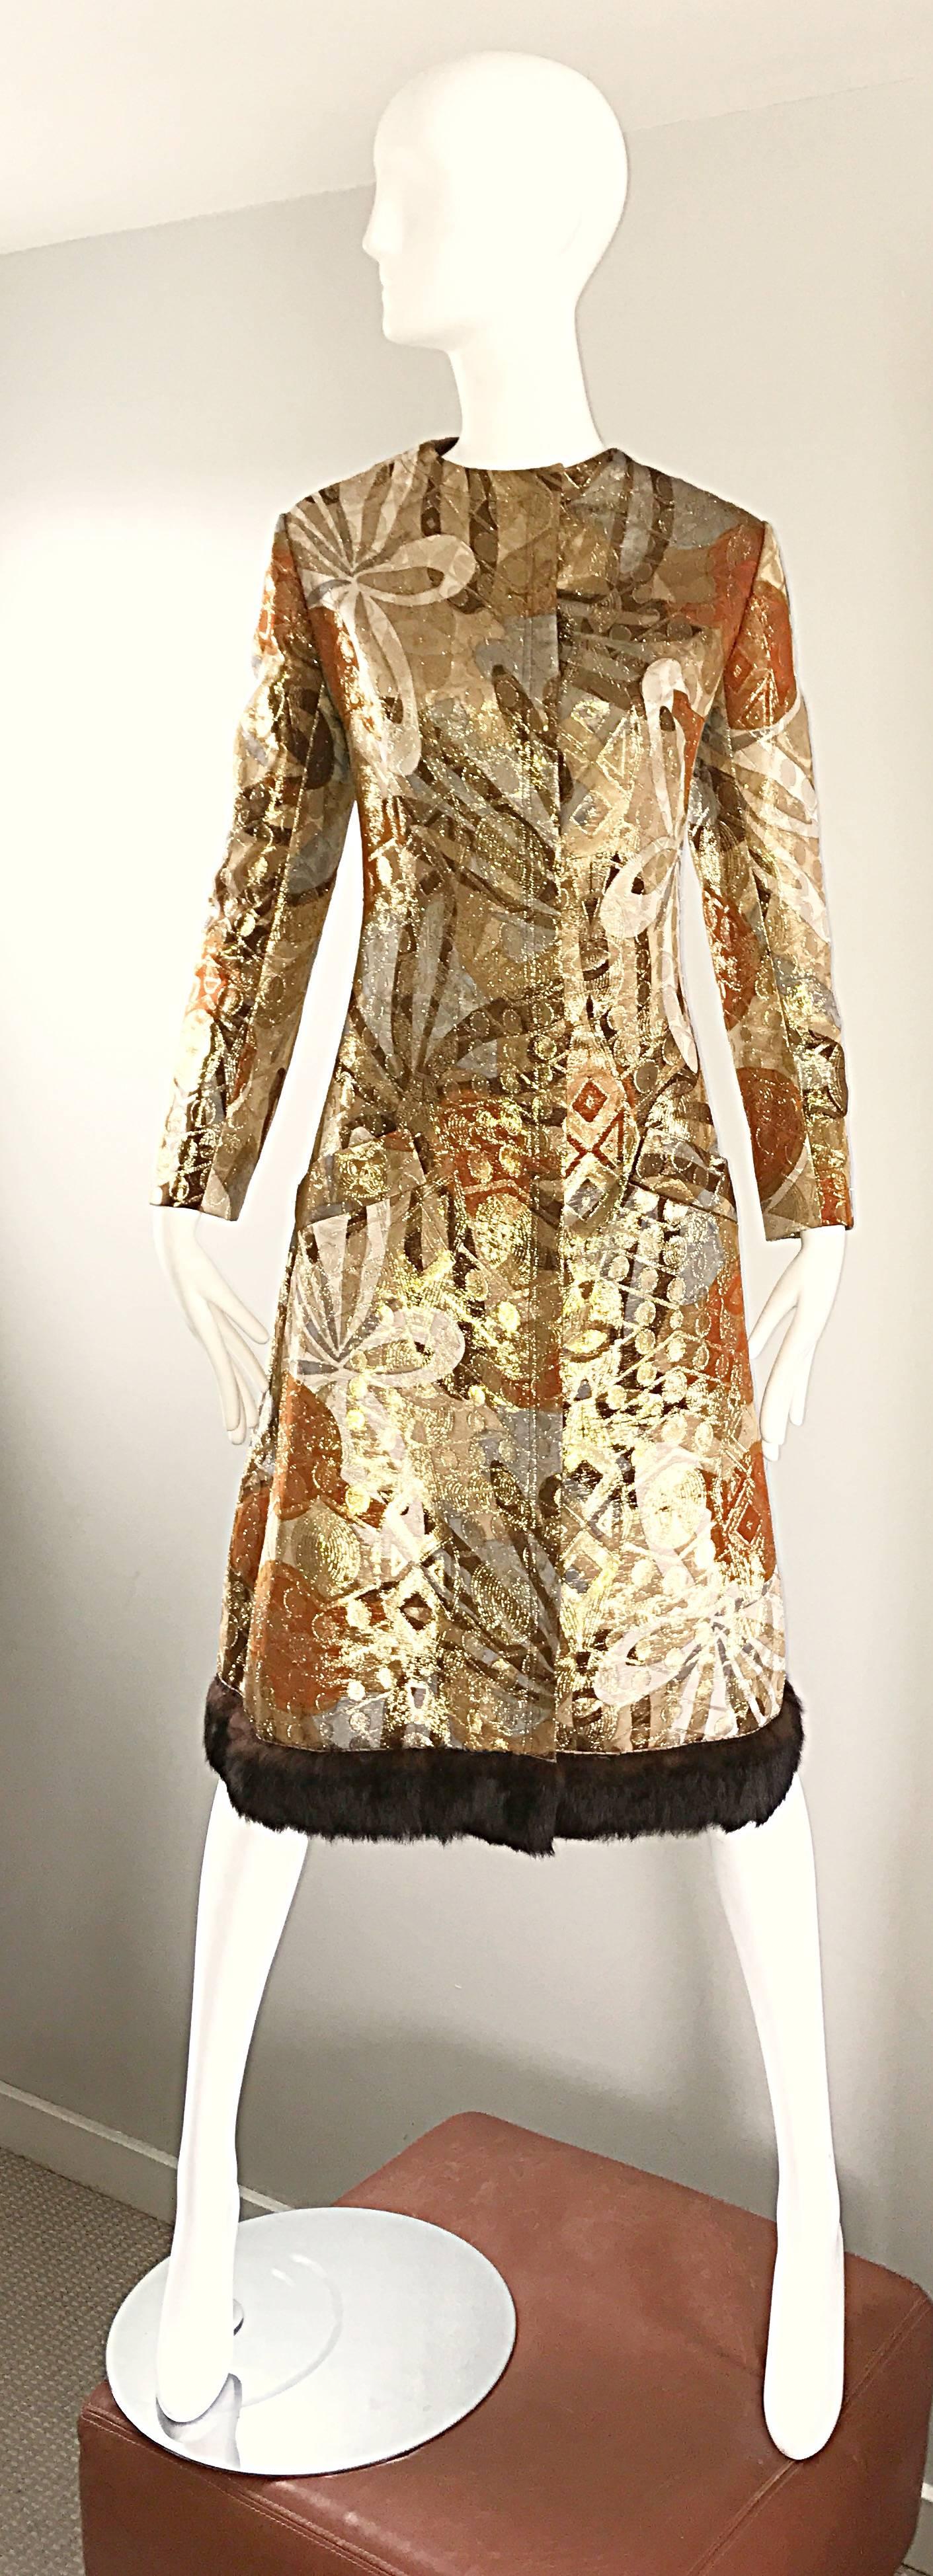 Sensationnelle robe ou veste A-Line en soie métallique BILL BLASS des années 1960 ! Il présente de fabuleuses impressions abstraites dans des teintes chaudes d'or, de brun, d'argent et de bronze. Garniture en fourrure de vison brun doux le long de